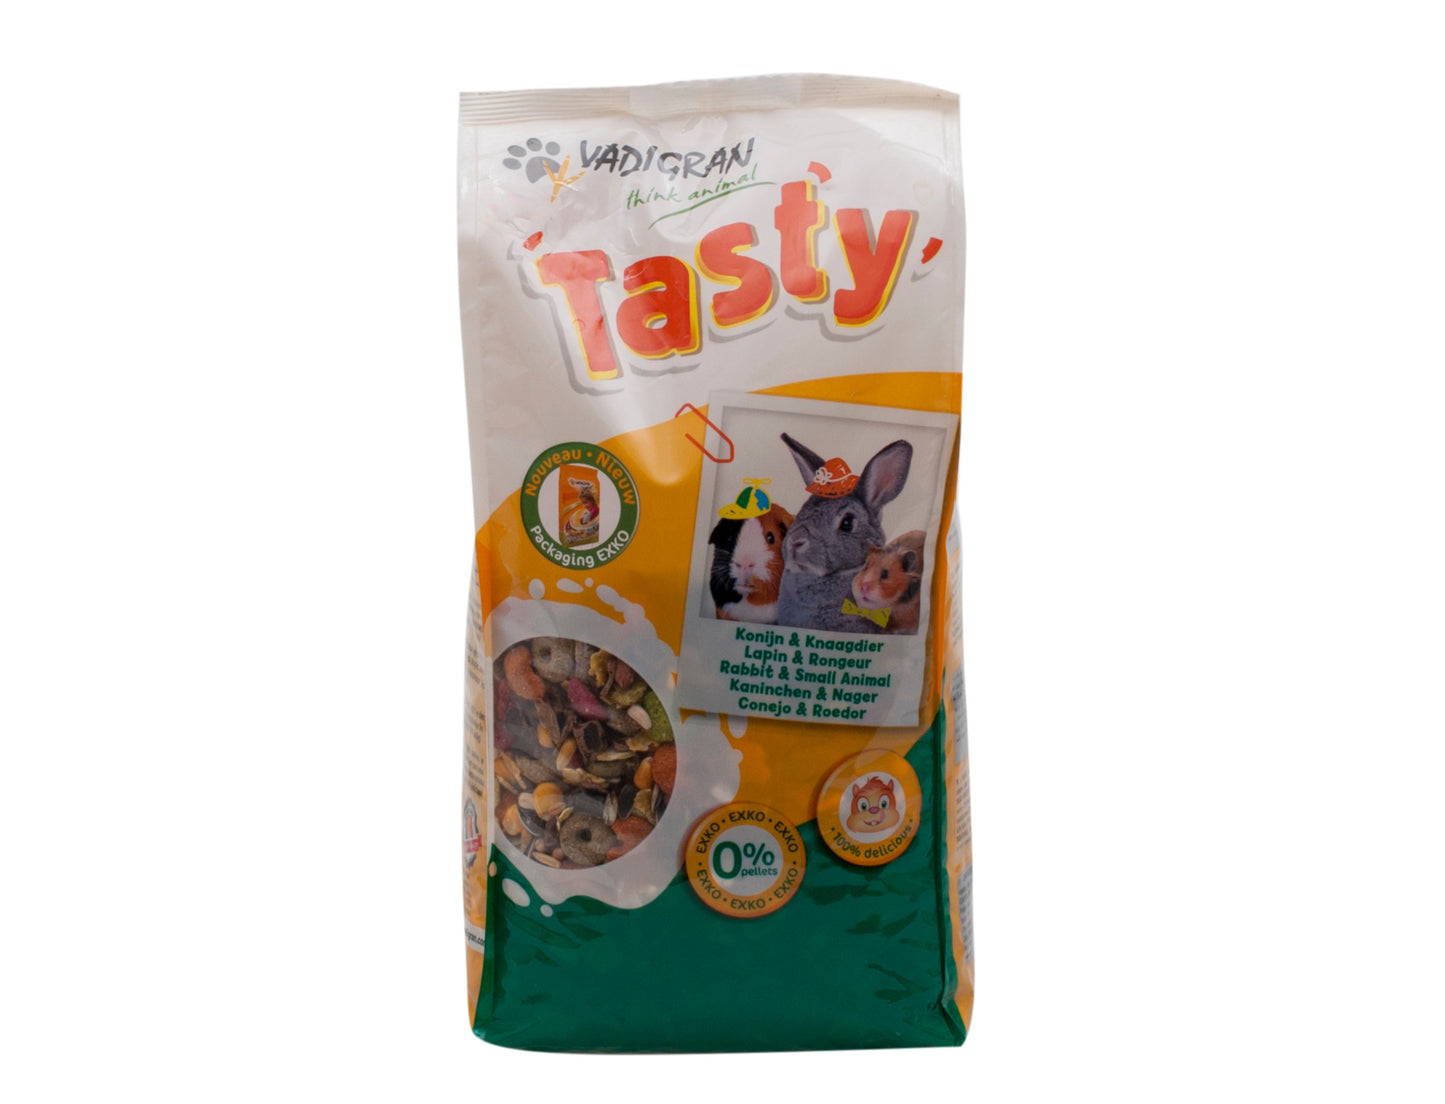 Tasty EXKO 1.75kg, volledige knaagdier voer, vadigran